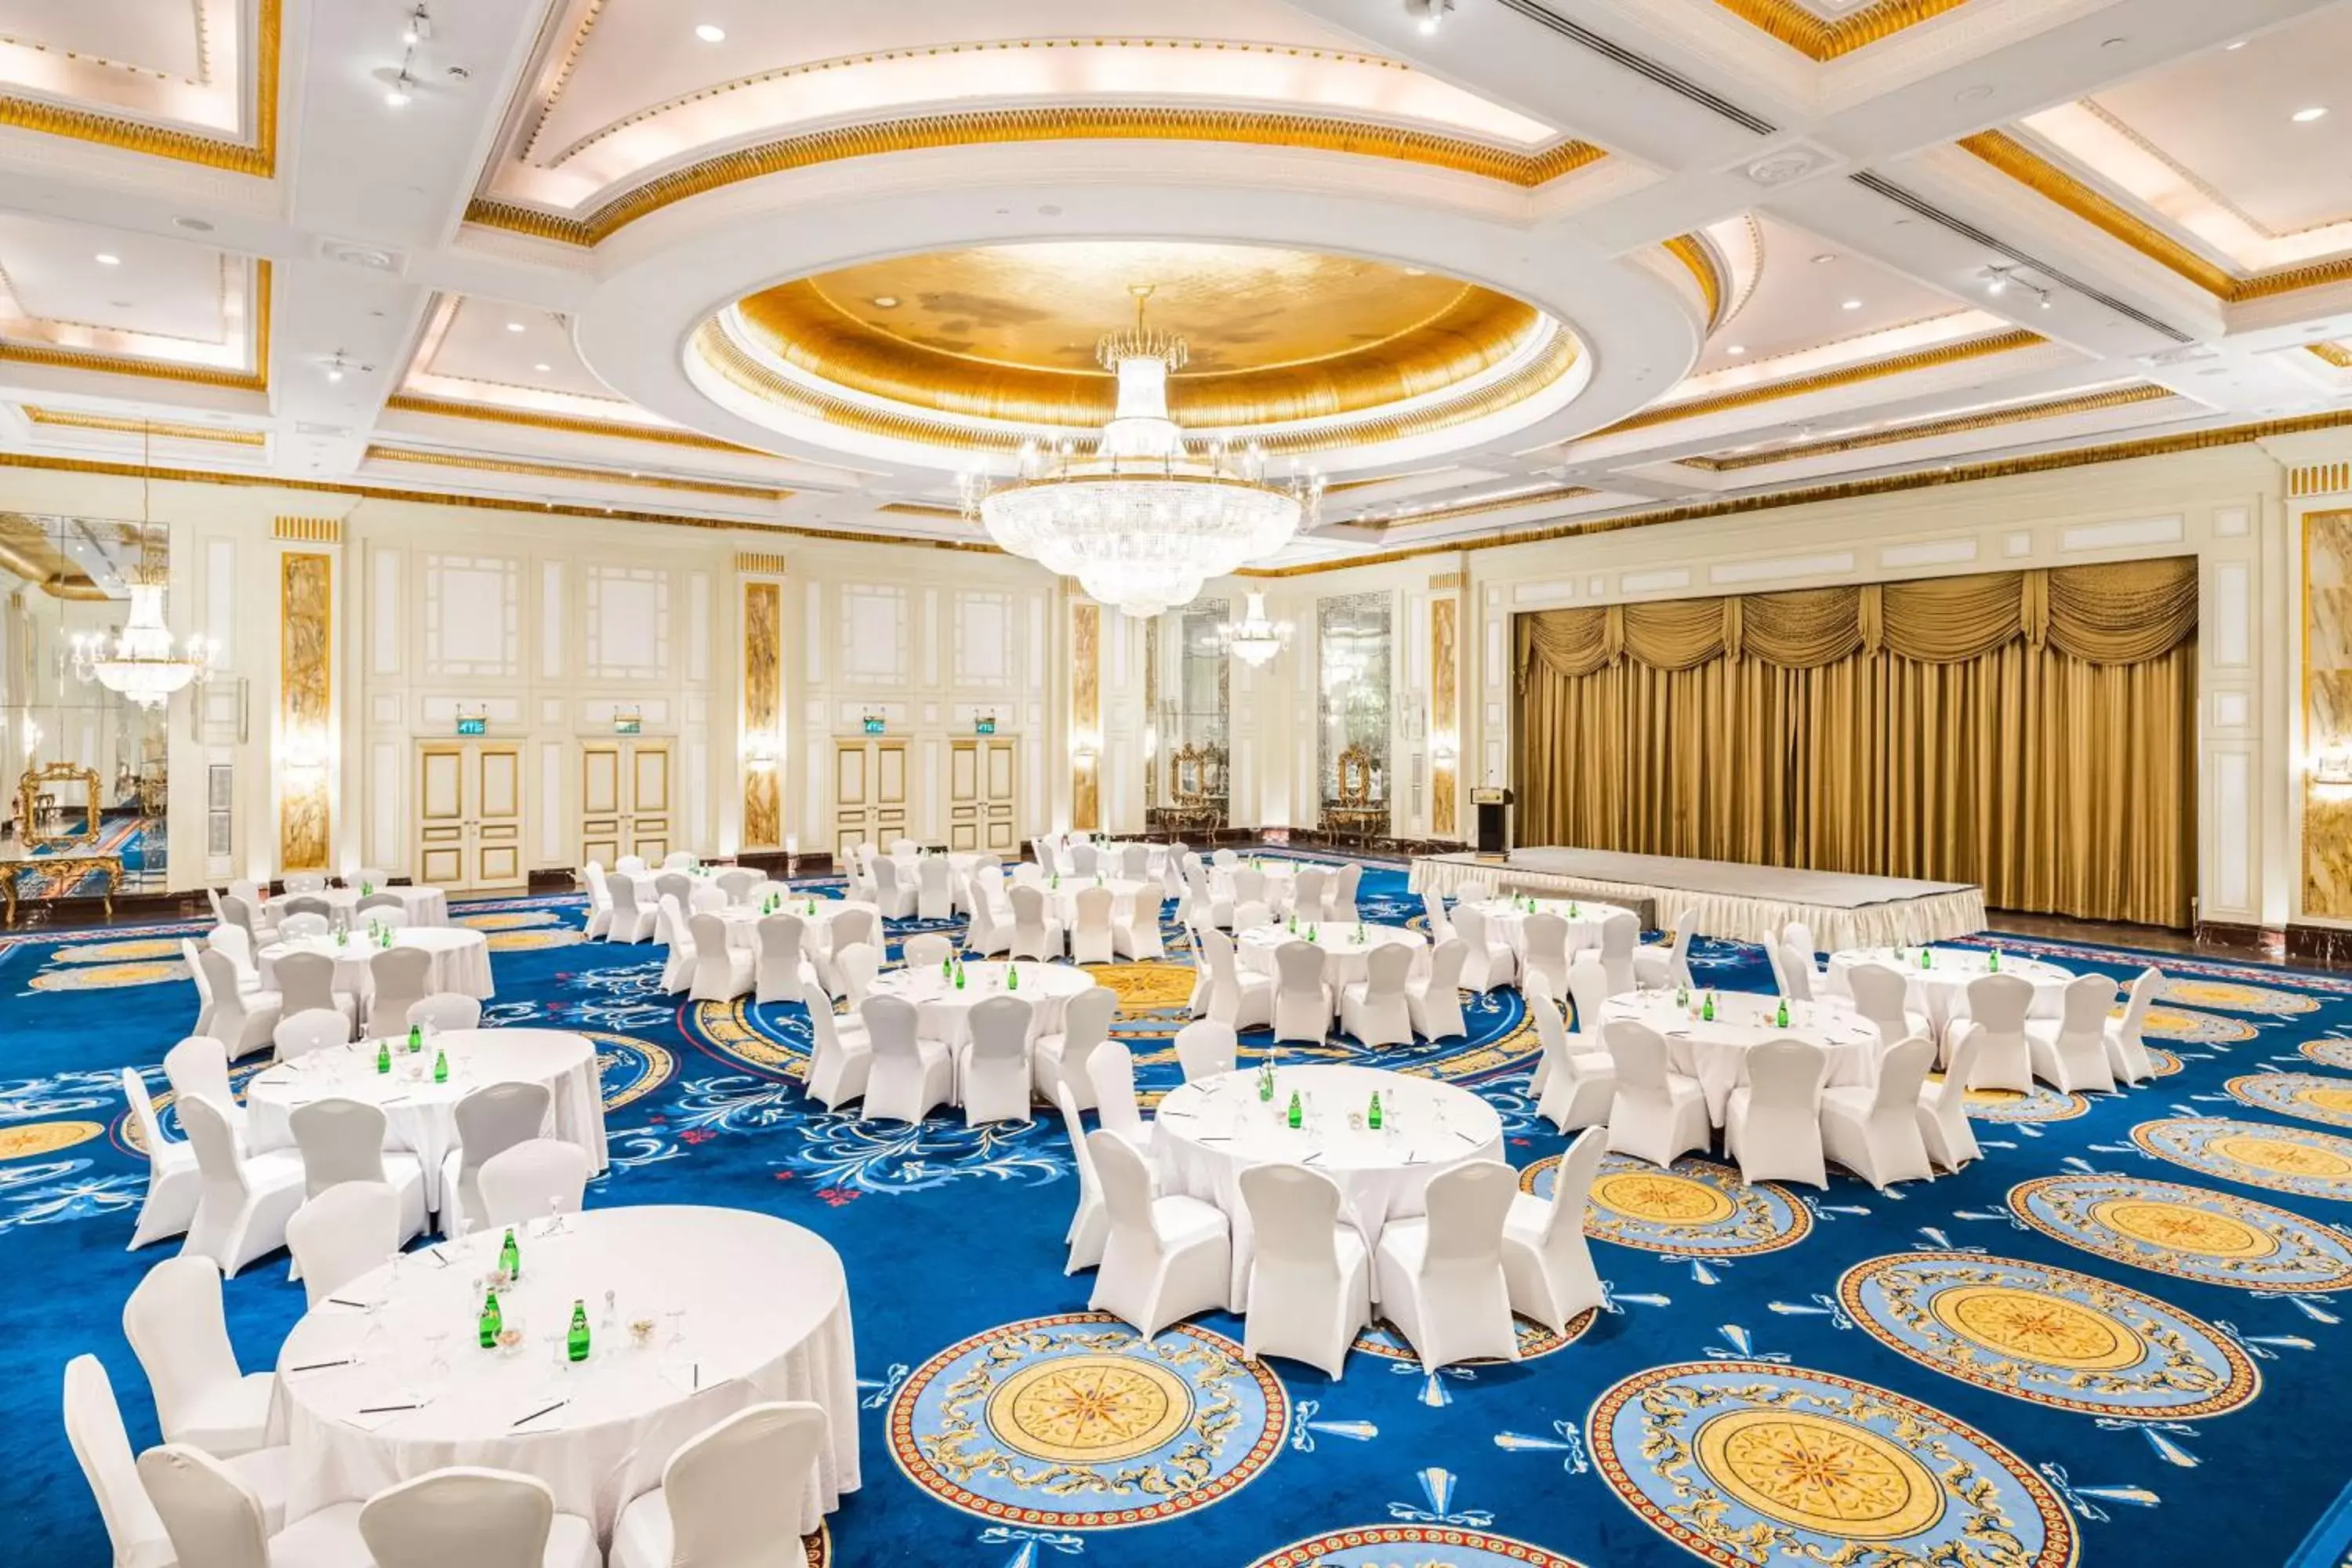 On site, Banquet Facilities in Radisson Blu Hotel, Riyadh